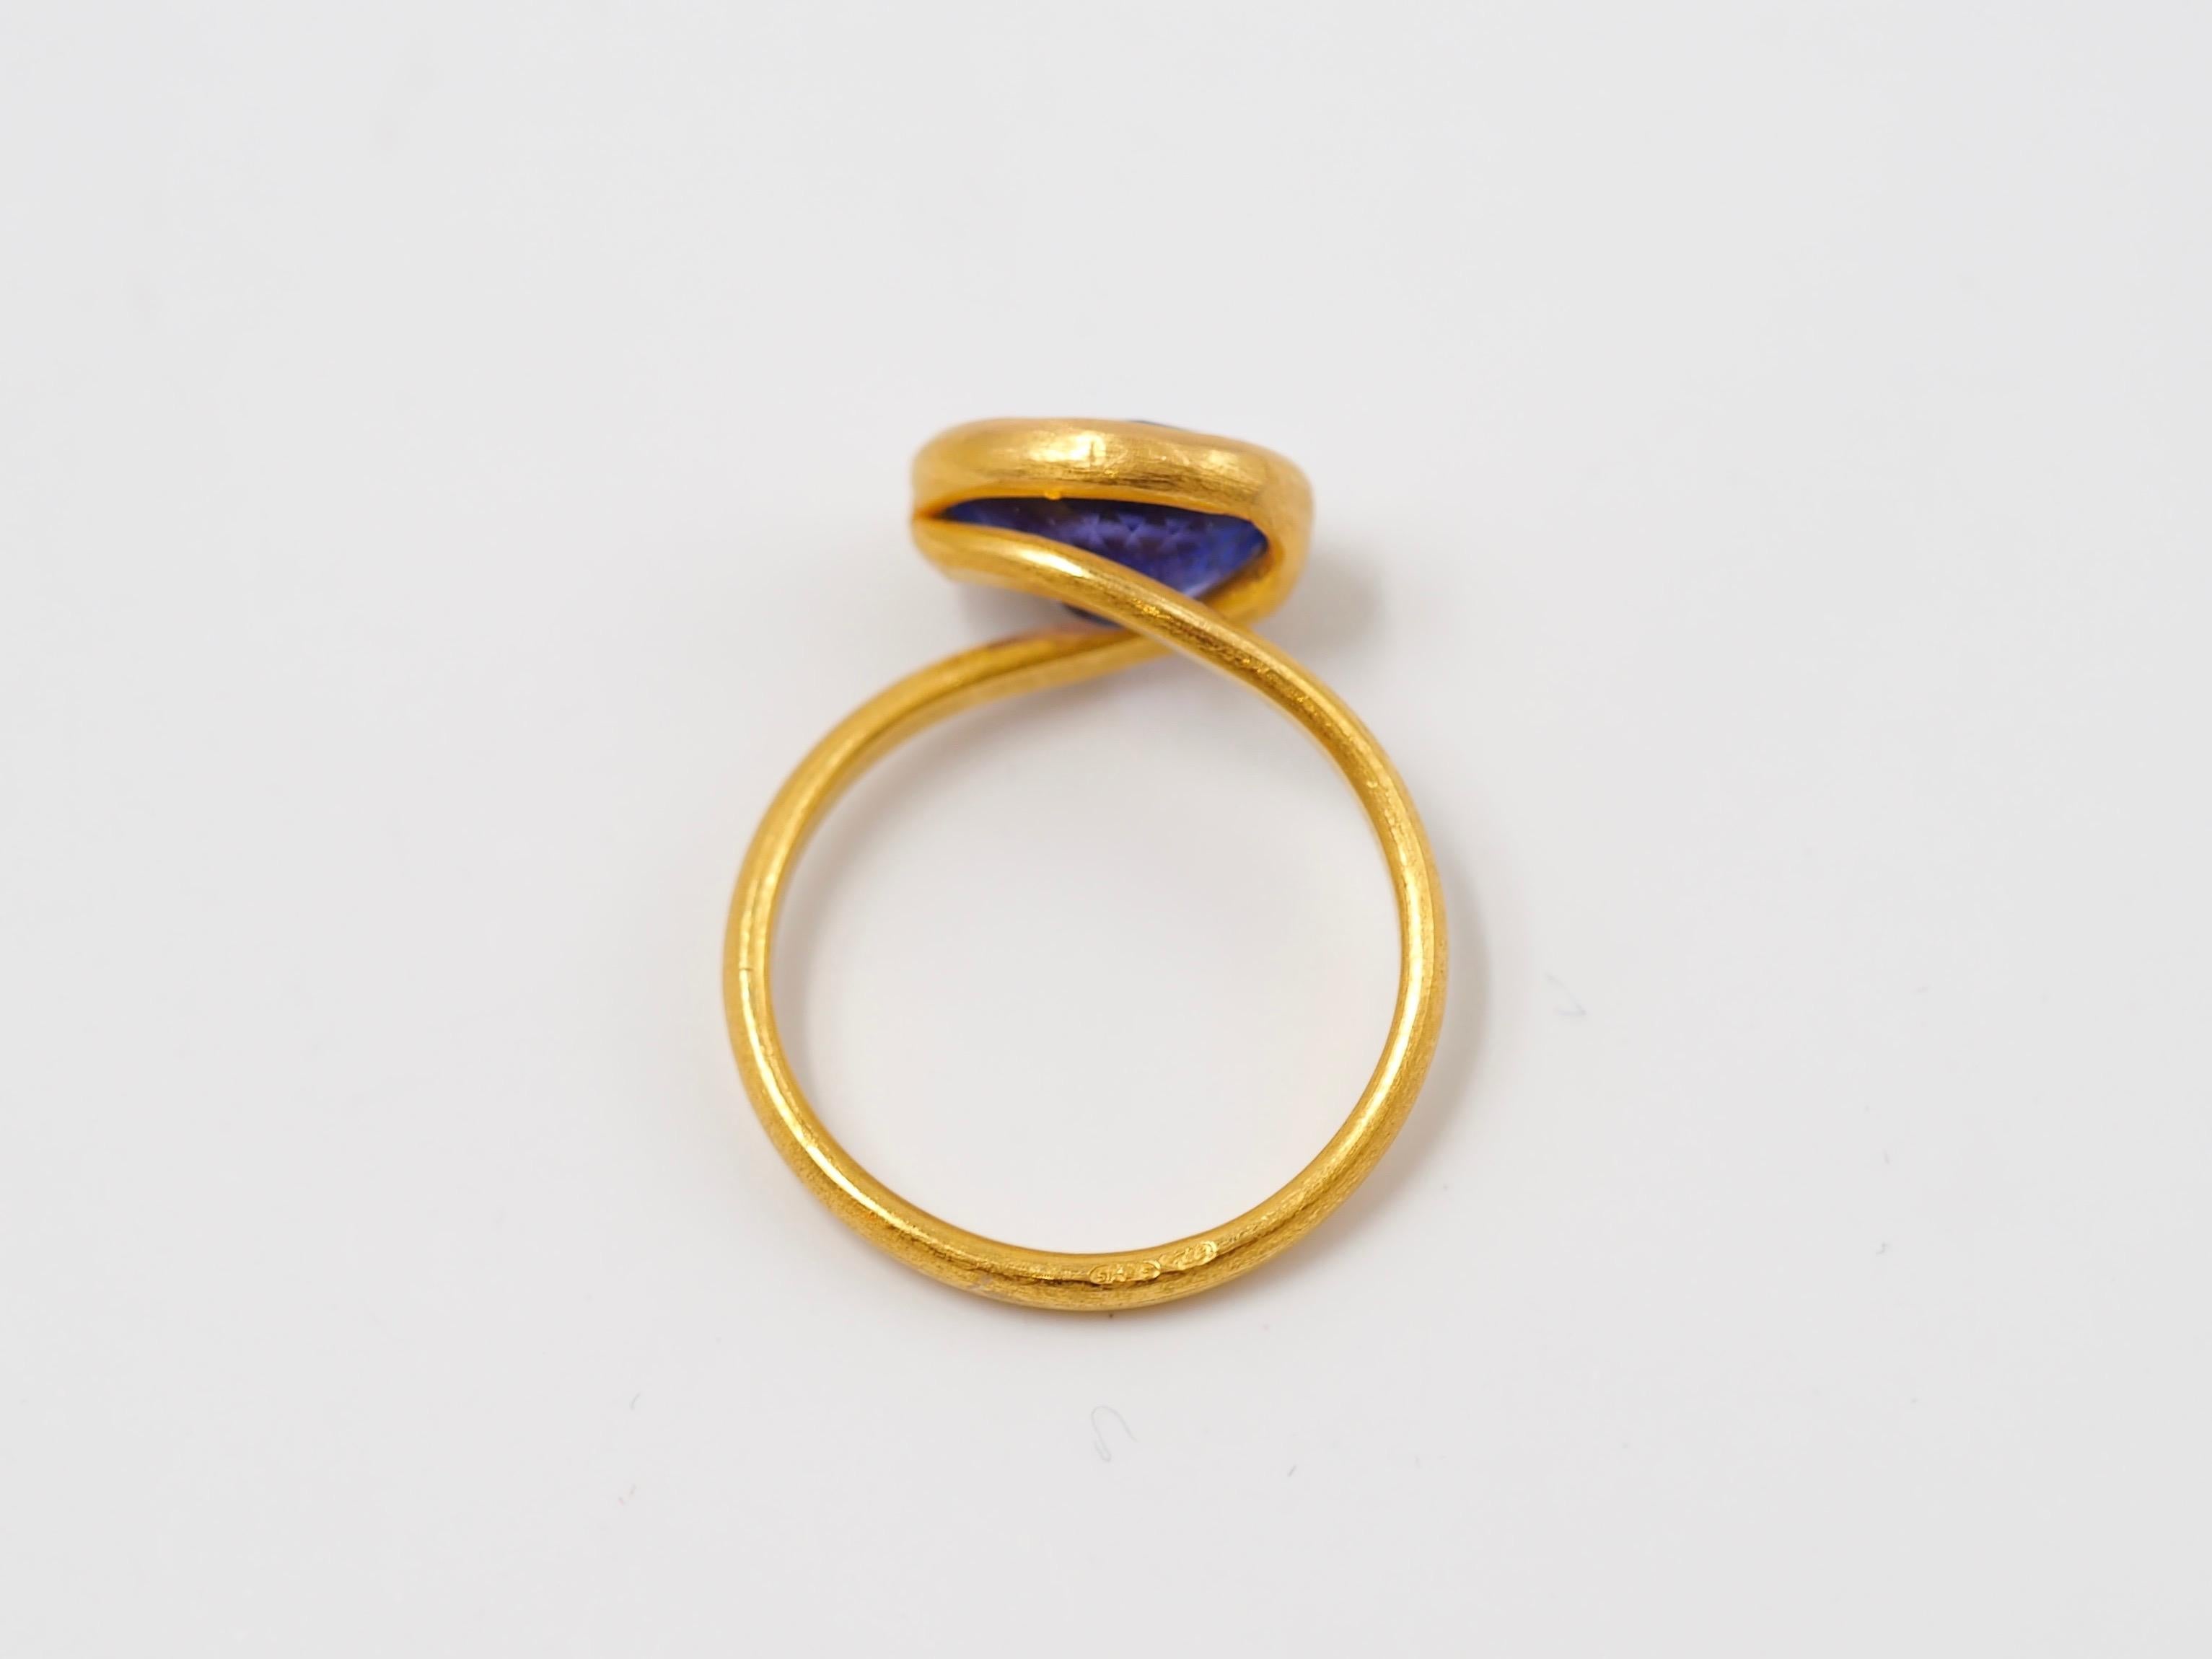 Scrives Purple Blue Tanzanite 22 Karat Gold Ring 2